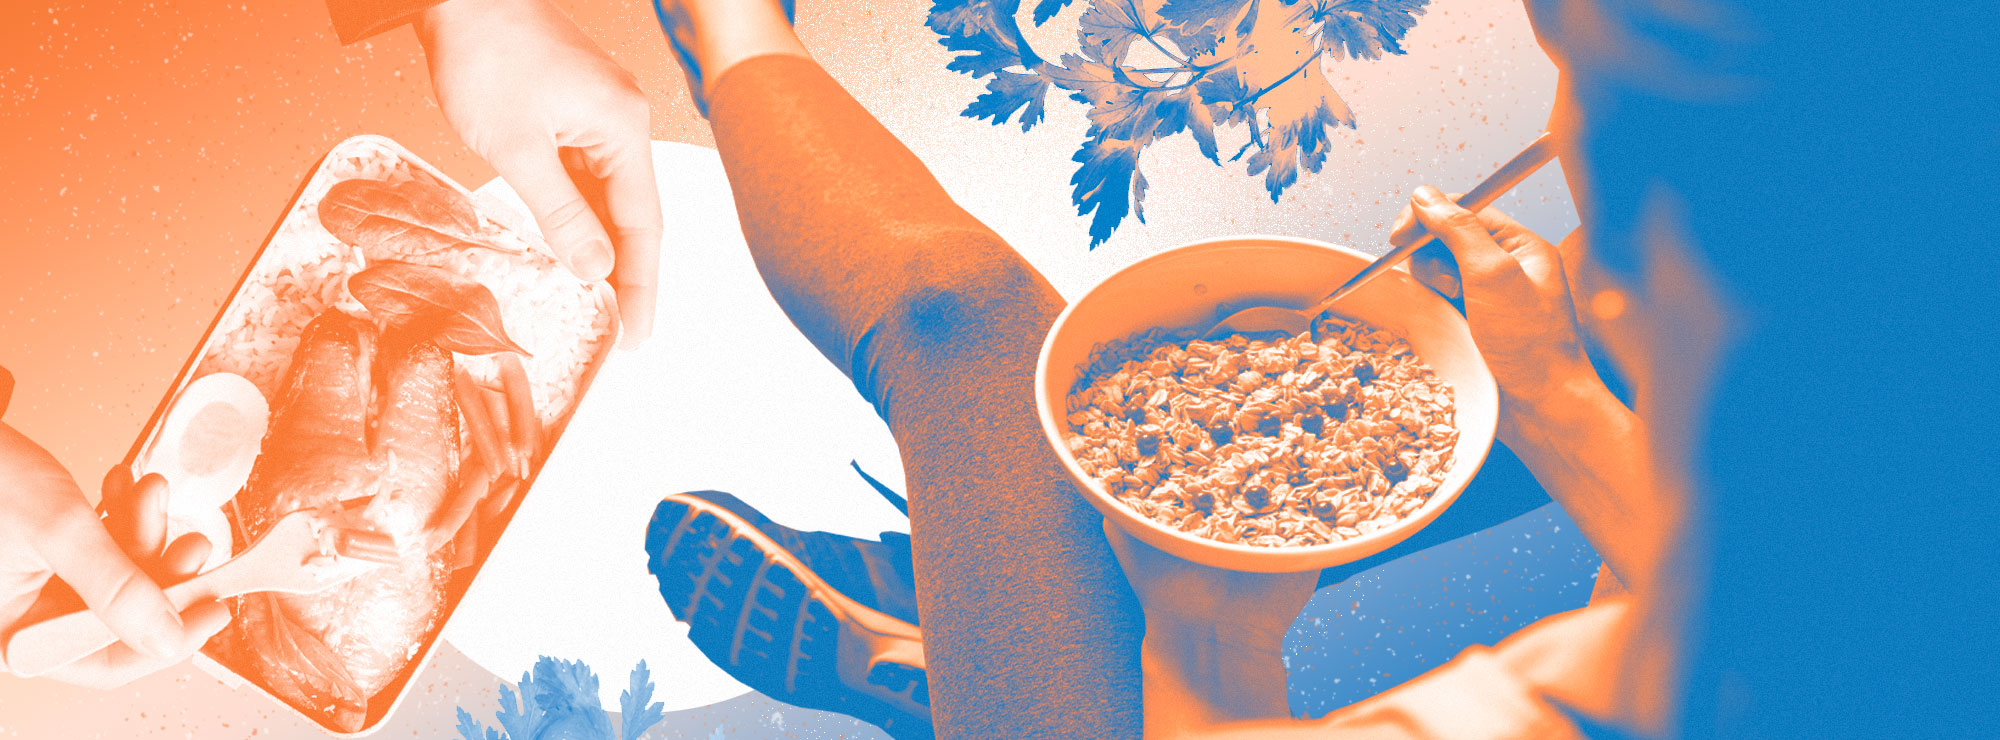 Полноразмерная обложка поста на тему: Омега-3 и здоровое питание для бегунов: ключевые продукты